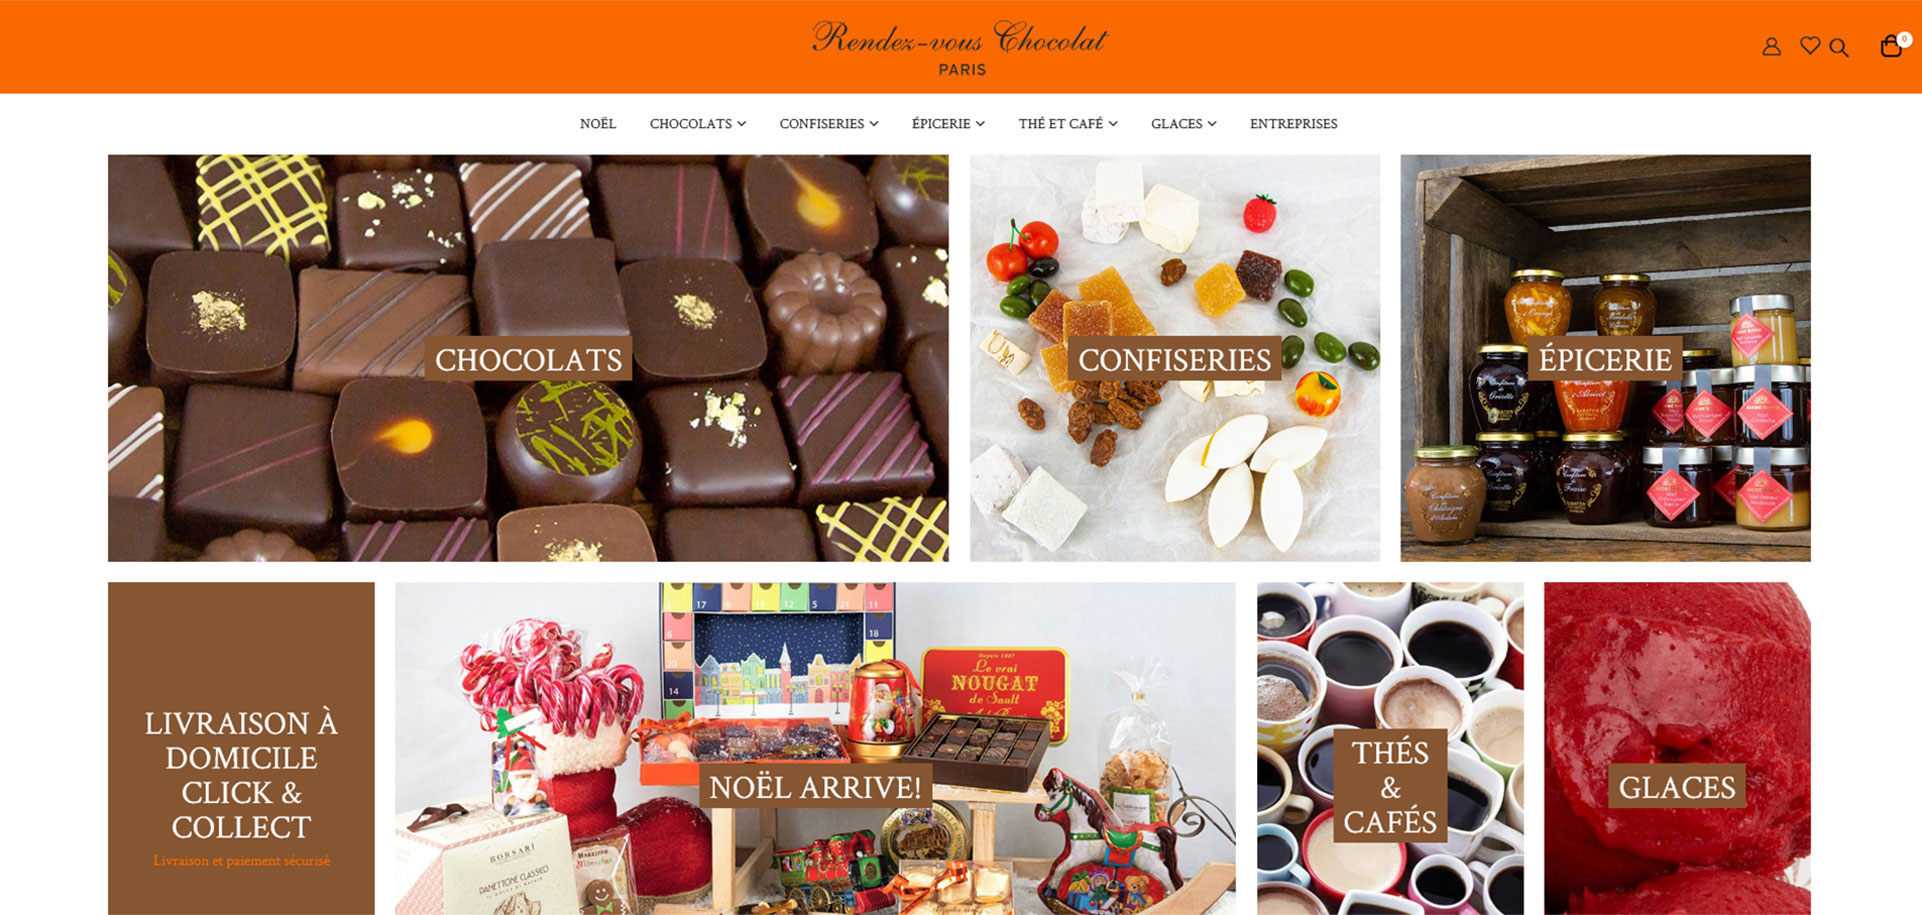 Rendez-vous Chocolat - vente en ligne de chocolats